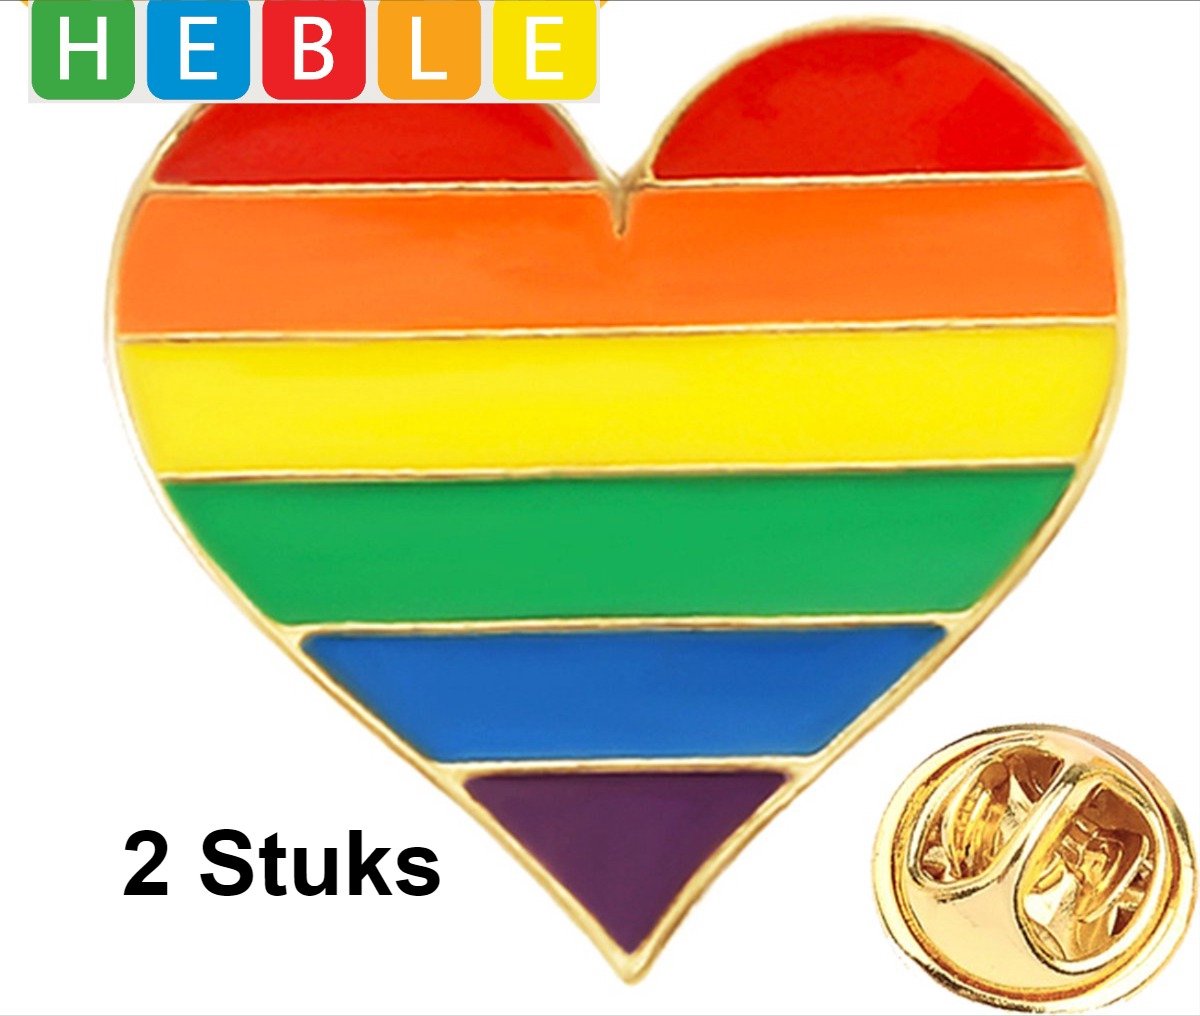 *** 2 Stuks Pride Broche - Regenboog Hartje - LGBTQ Pin Speld - van Heble® ***